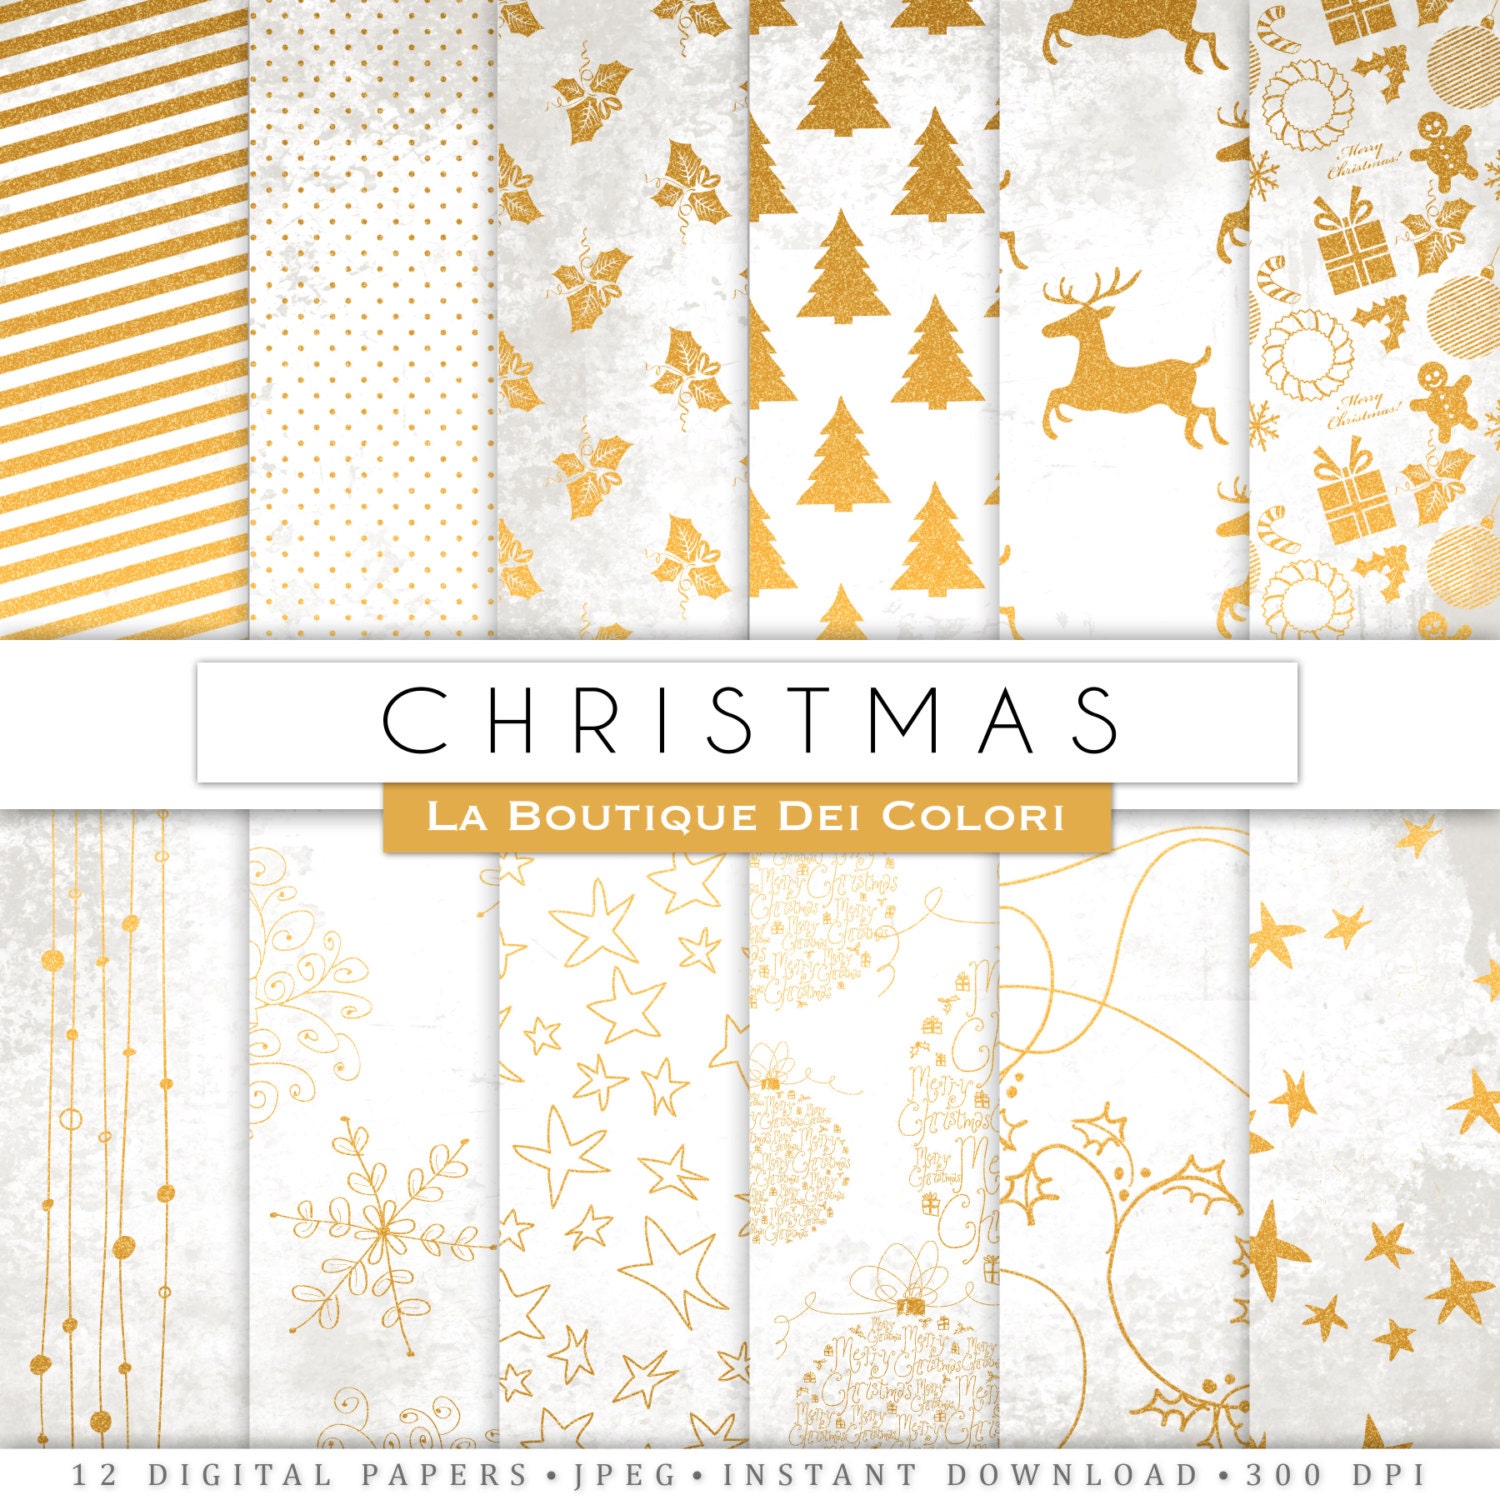 Thưởng thức vải kỹ thuật số Giáng sinh màu trắng và vàng tươi mới và đầy sắc màu. Sản phẩm này sẽ mang đến cho bạn cảm giác ấm áp, tươi mới và vui tươi vào mùa lễ hội, cùng với chất lượng tuyệt vời và thiết kế độc đáo của nó. Hãy đến và khám phá những điều tuyệt vời mà sản phẩm này mang lại!